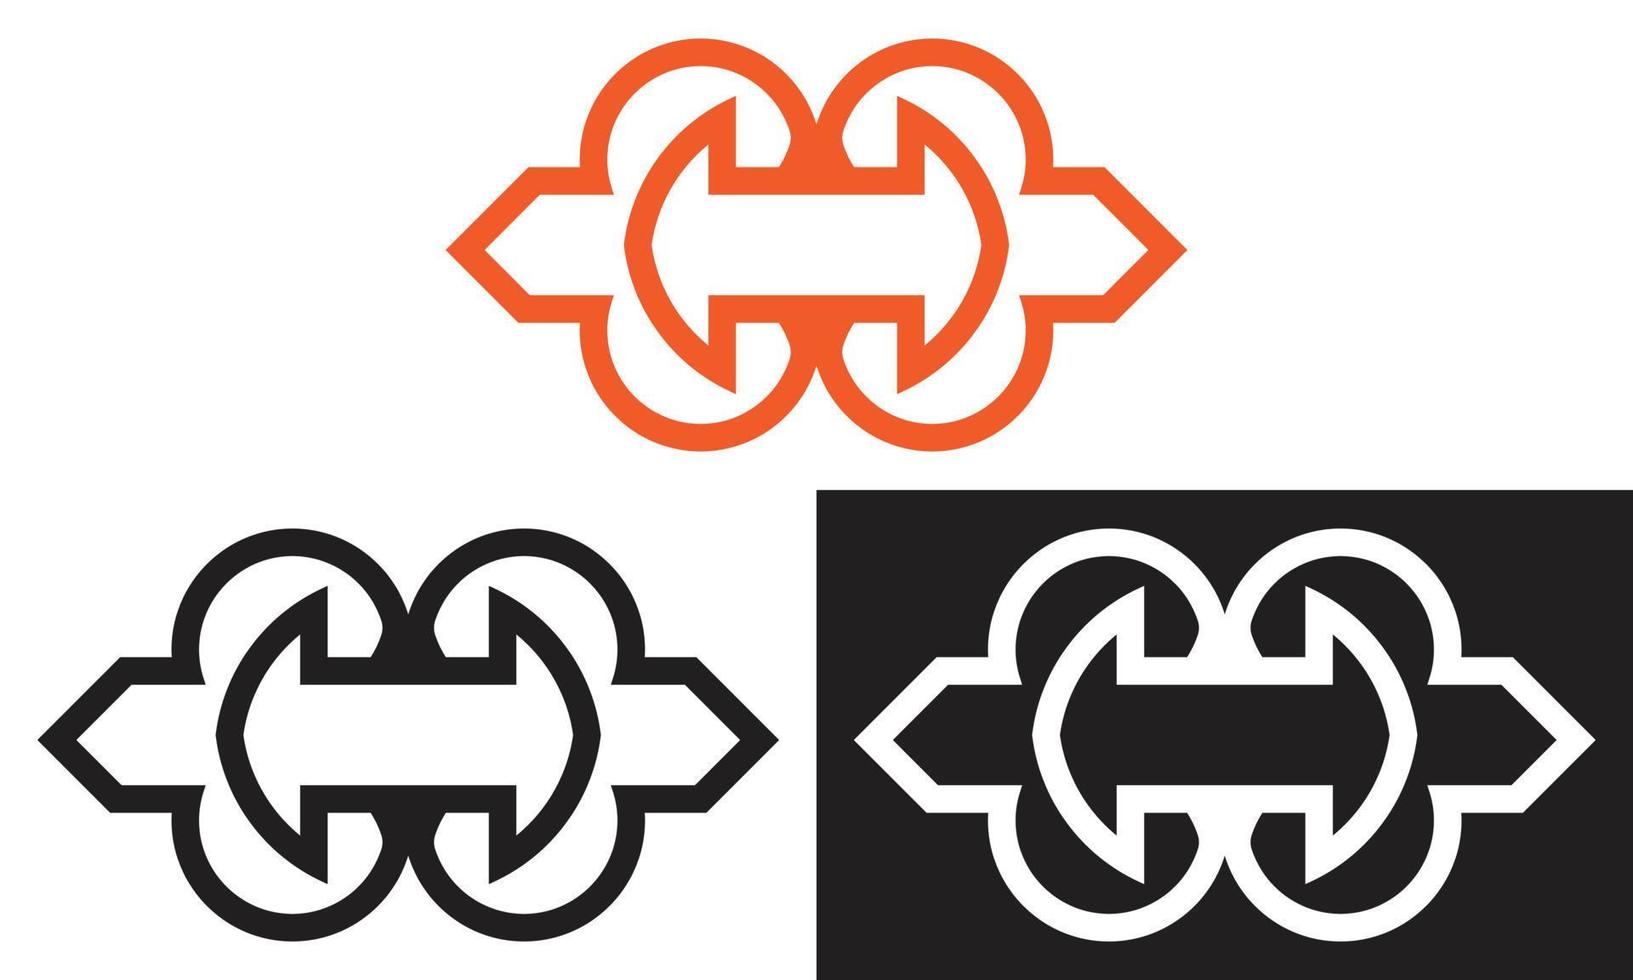 arrow vector logo design, arrow icon template for business